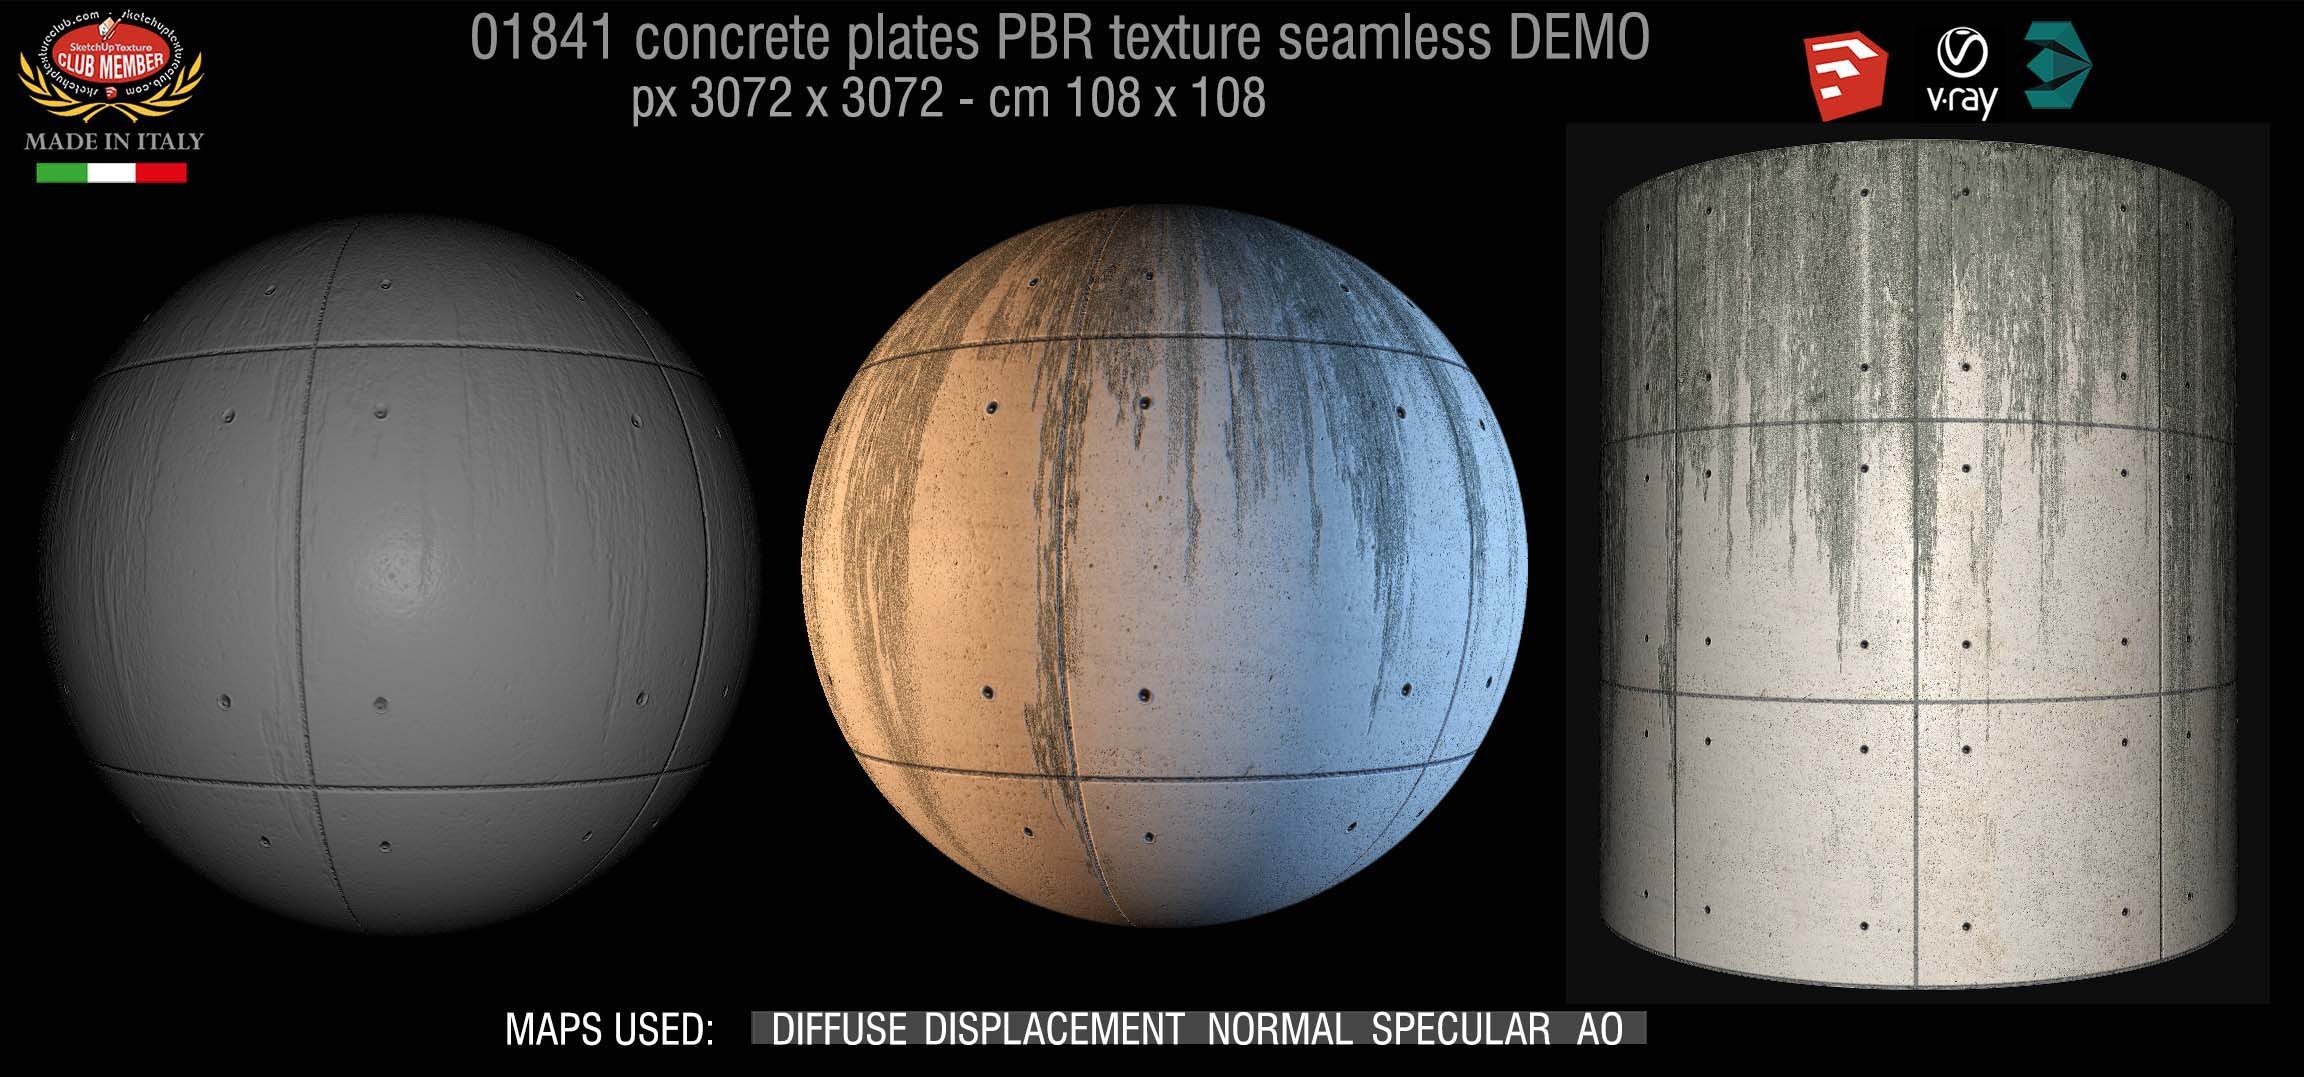 01841_Tadao Ando concrete plates PBR texture seamless DEMO